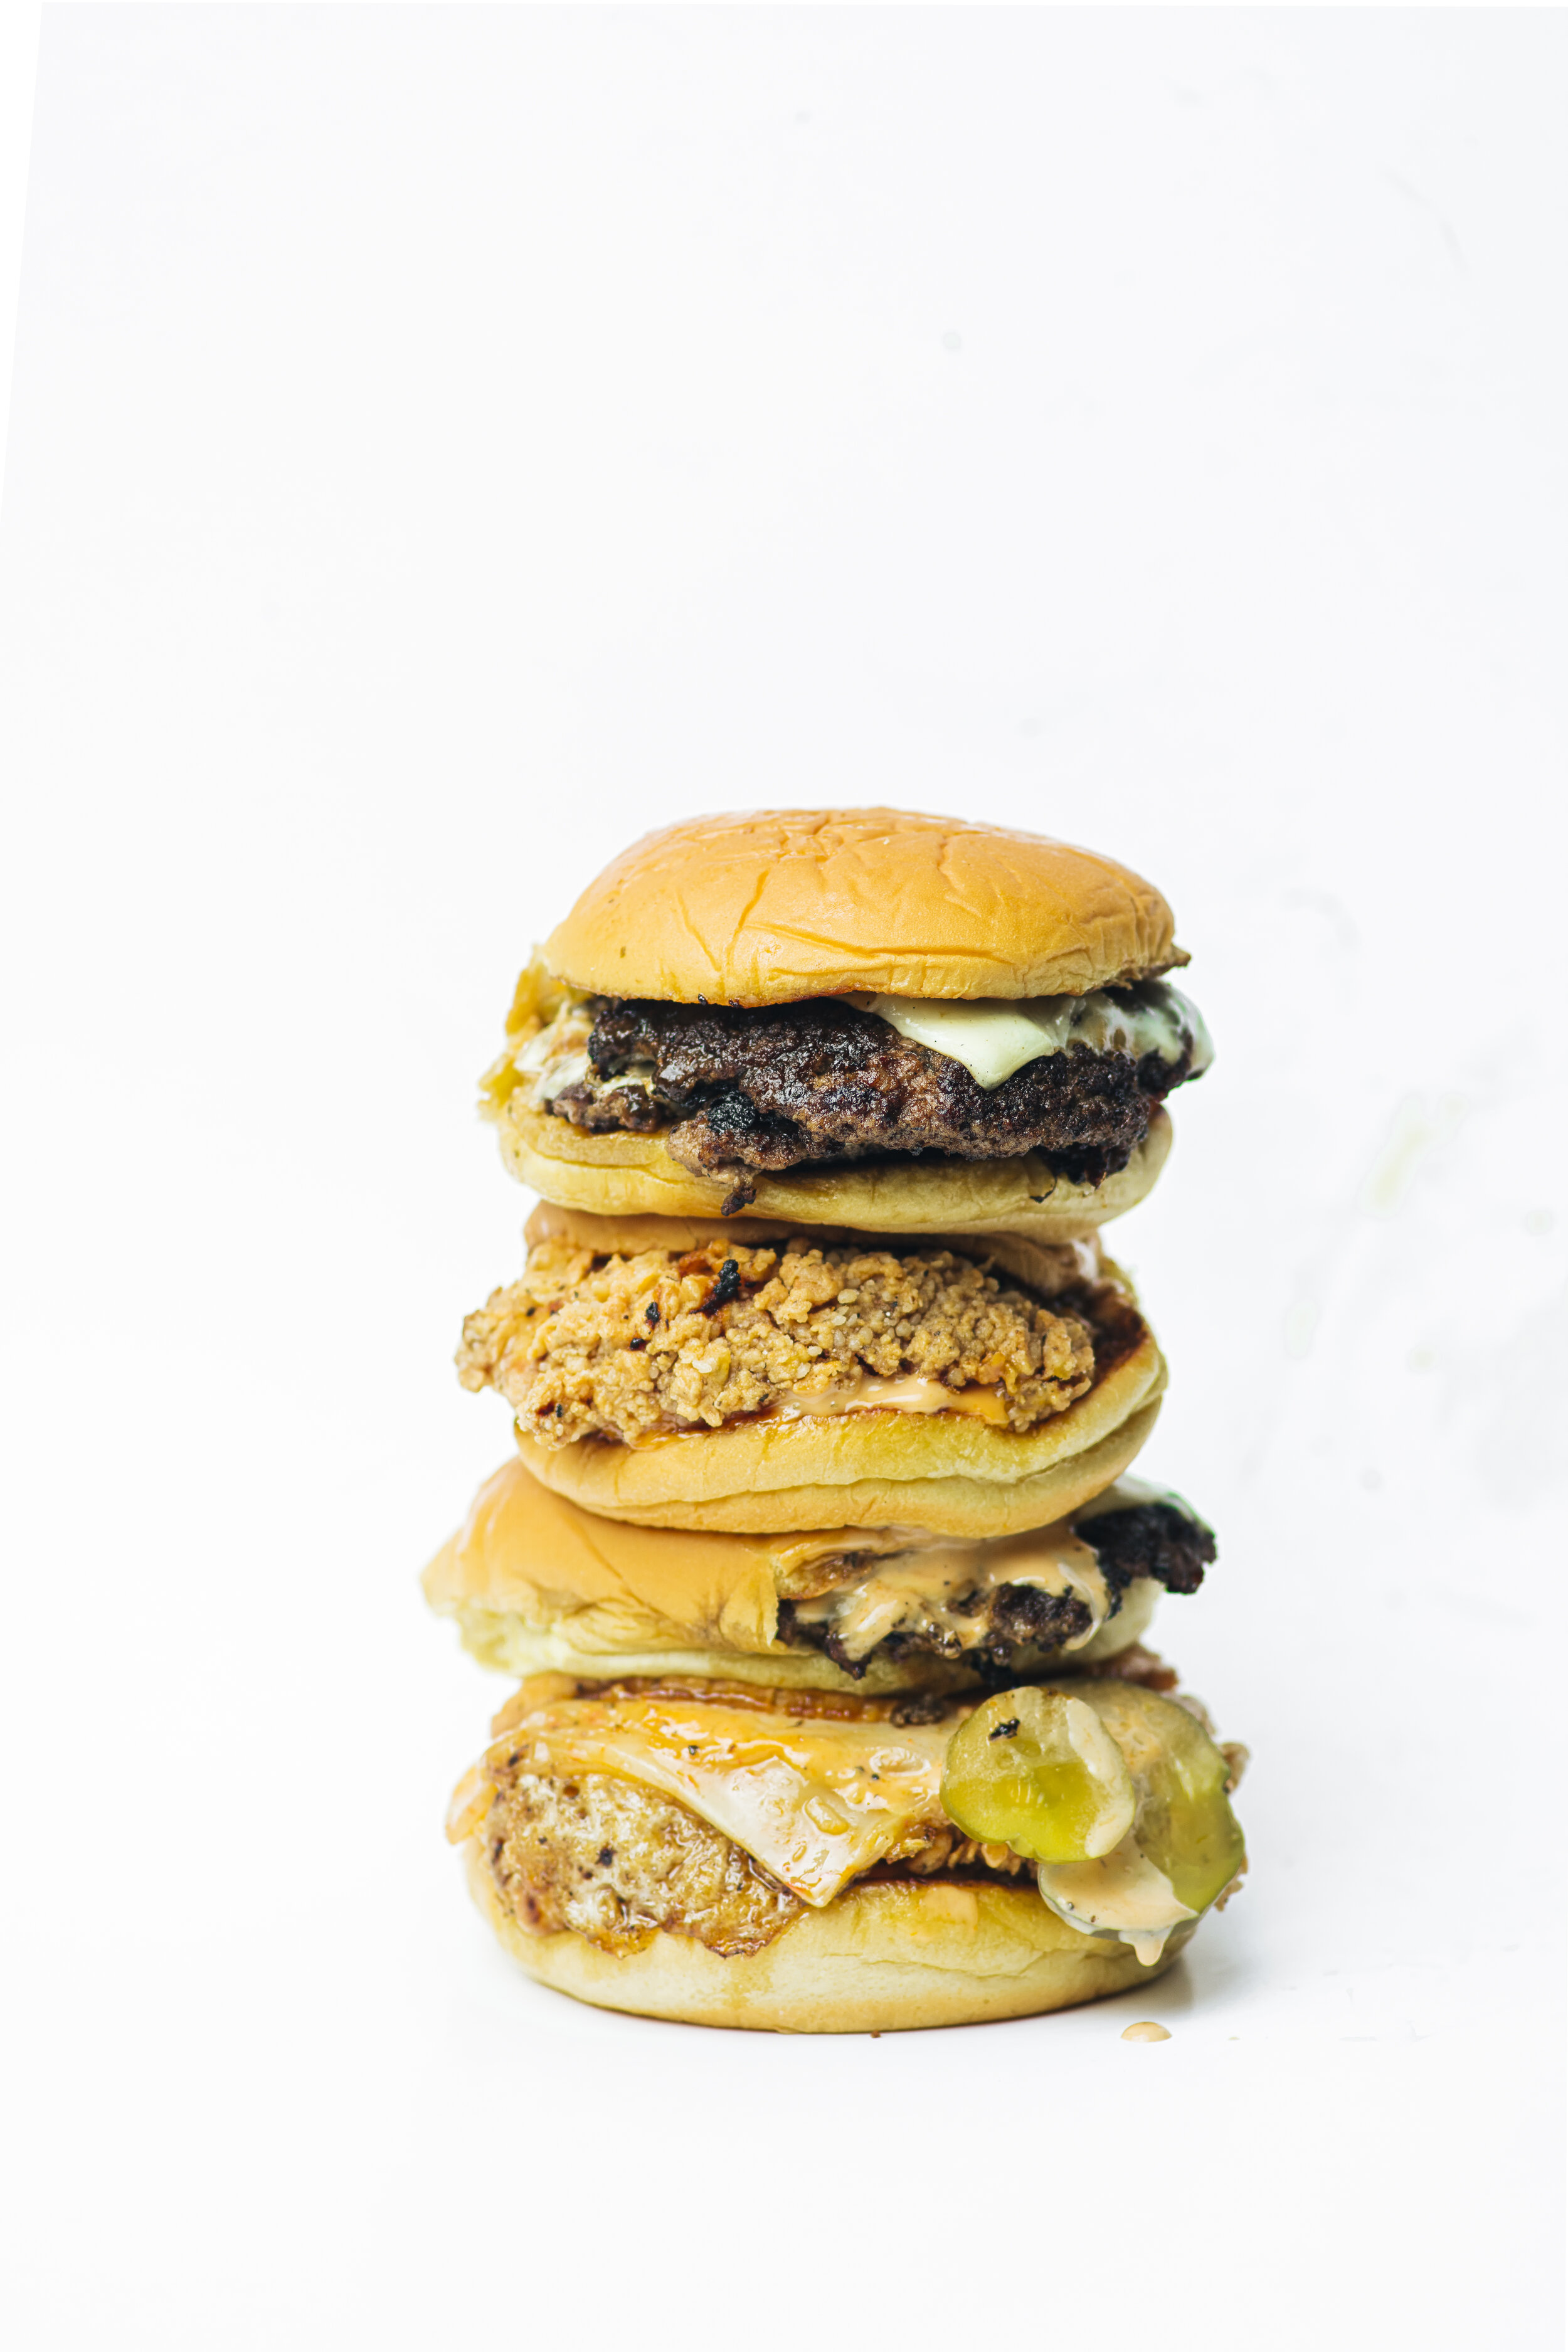 Super Duper Spot | Badass burgers + fries